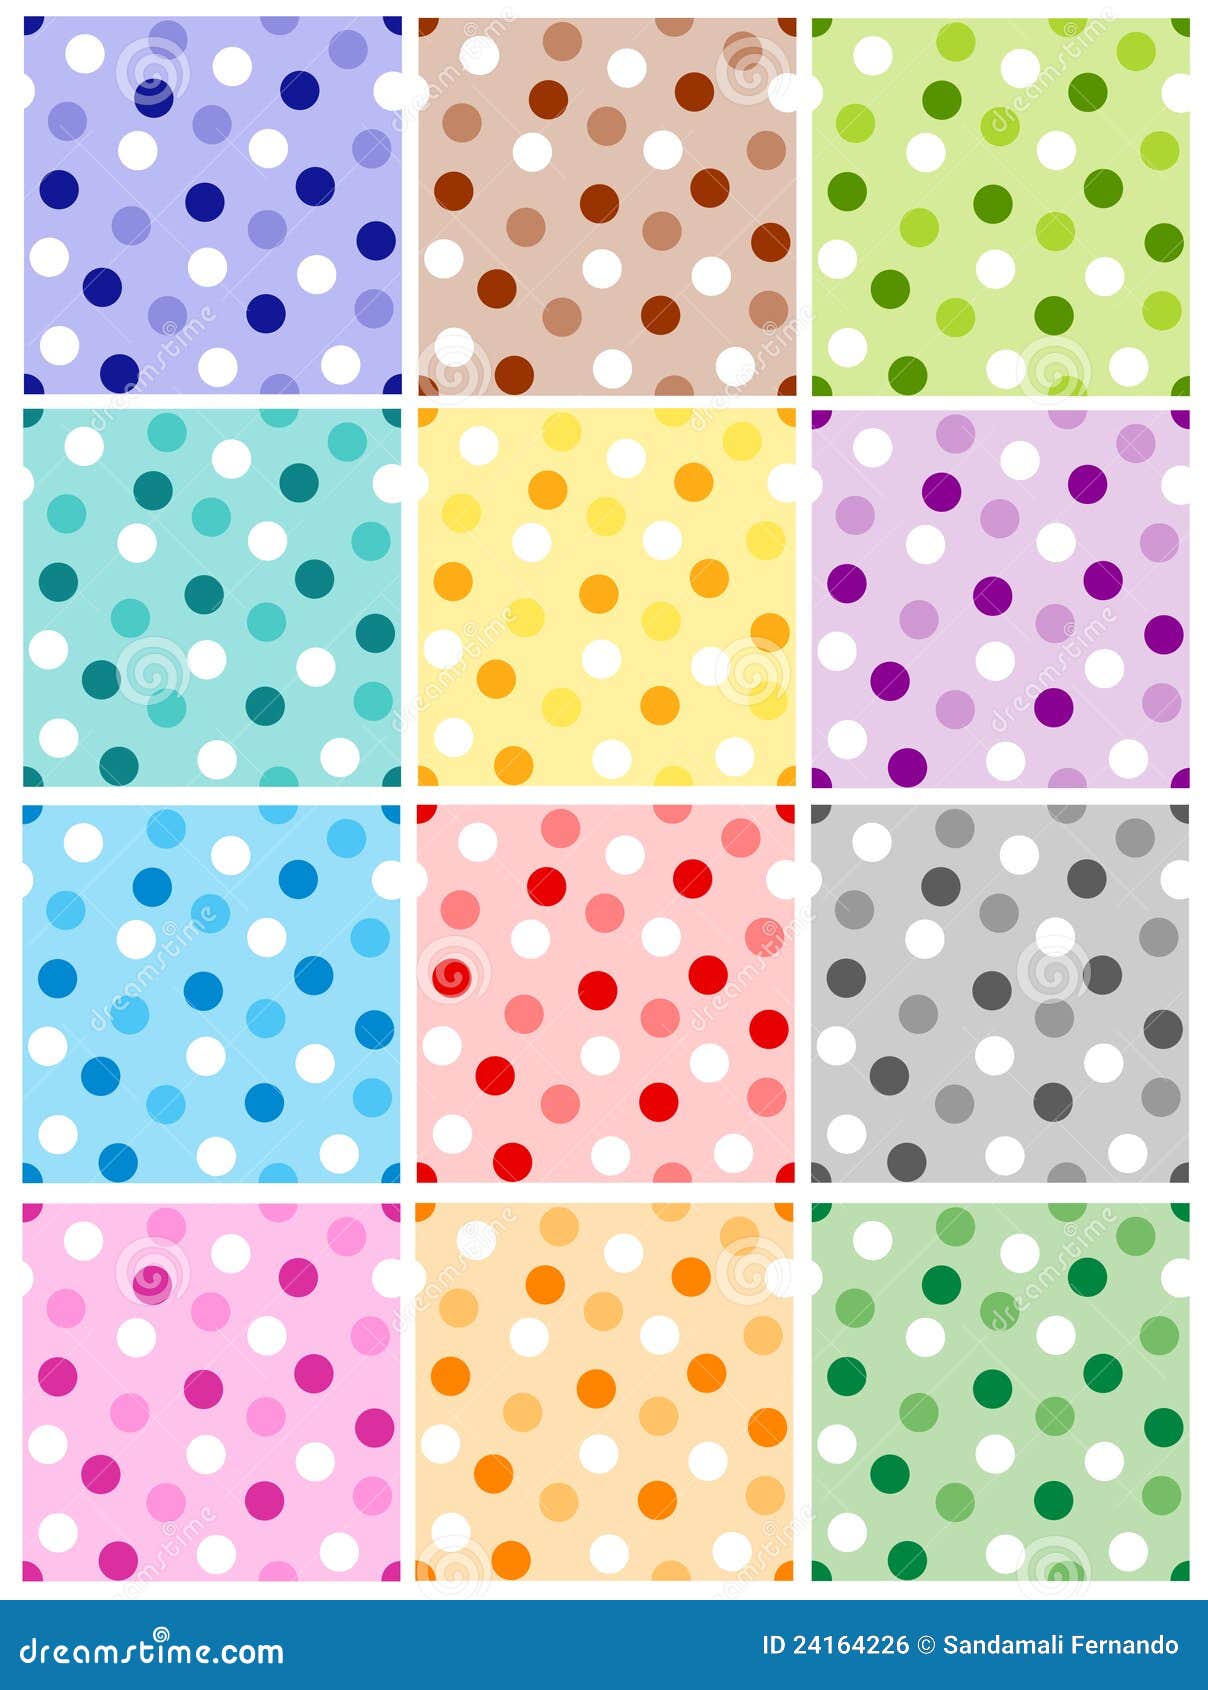 Polka Dot Design 10